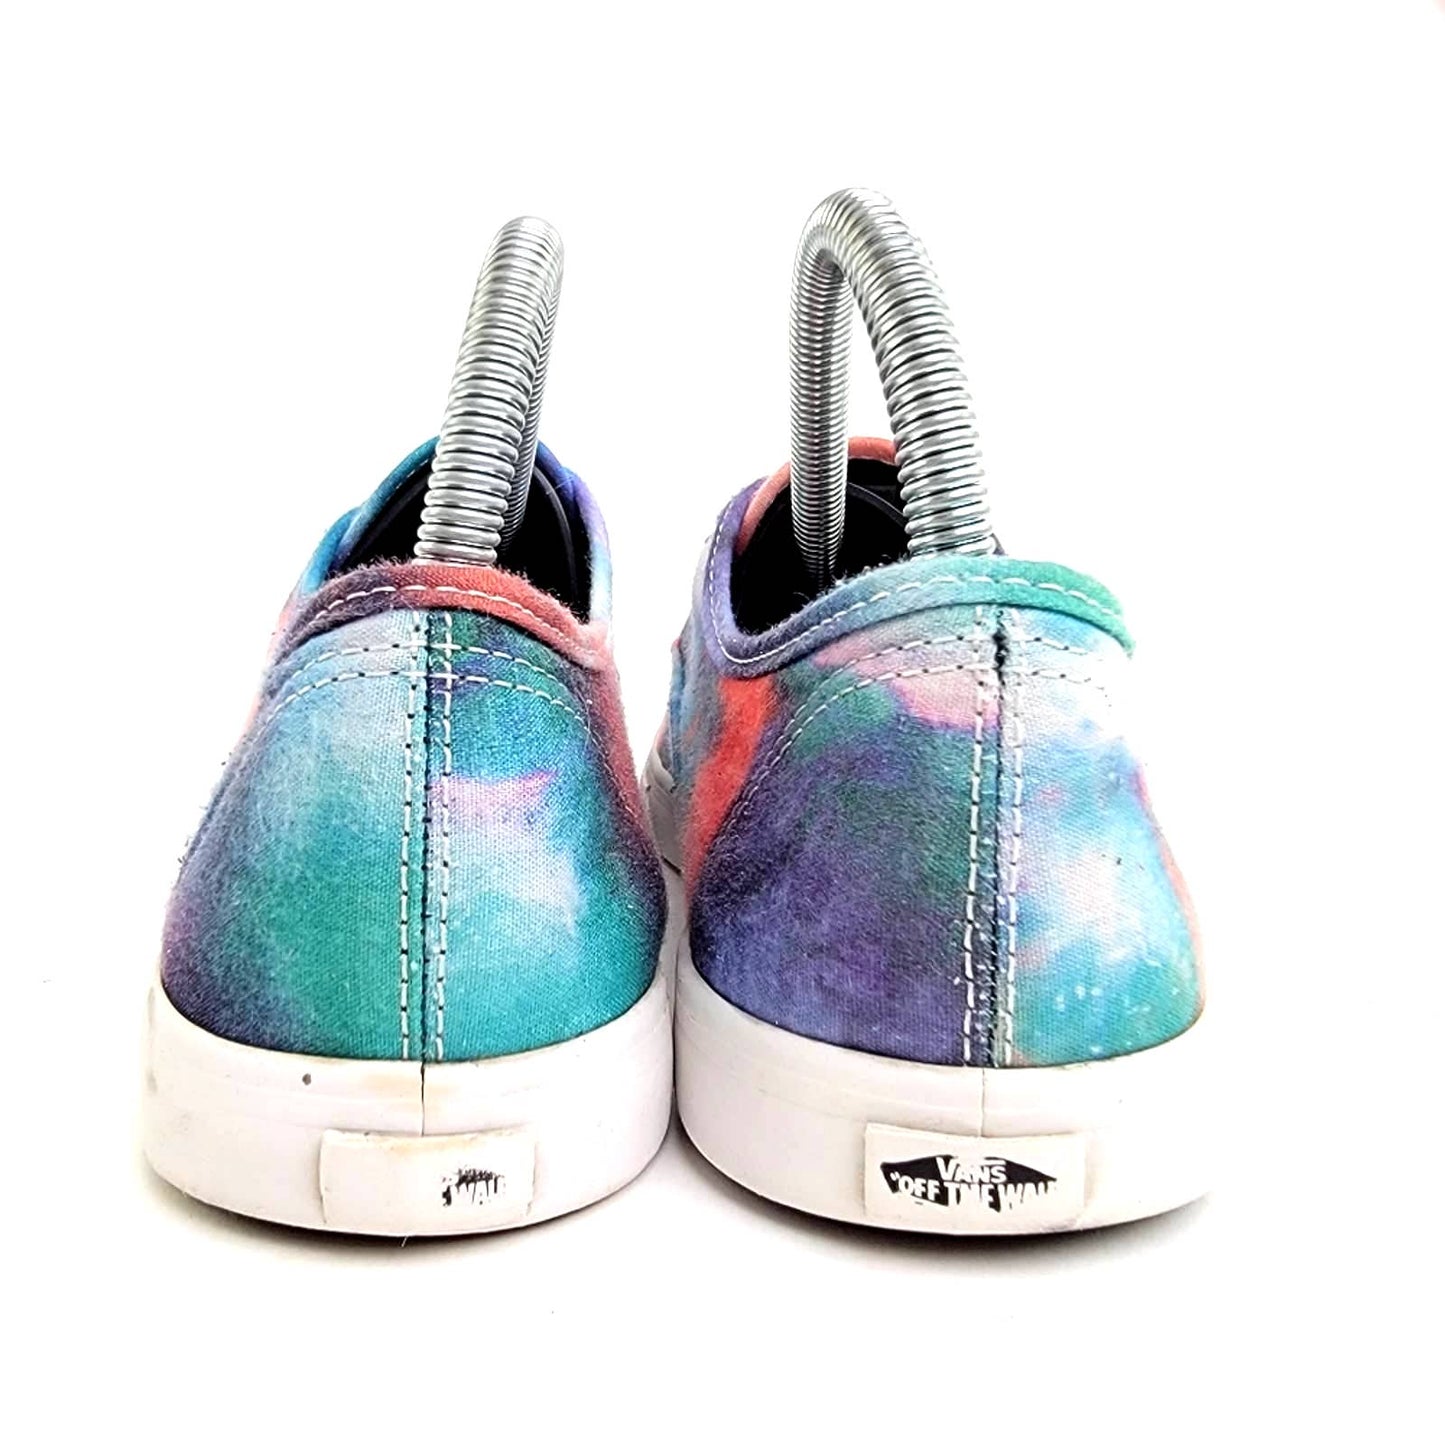 VANS Lo Pro Galaxy Cosmic Space Canvas Sneakers - 8.5